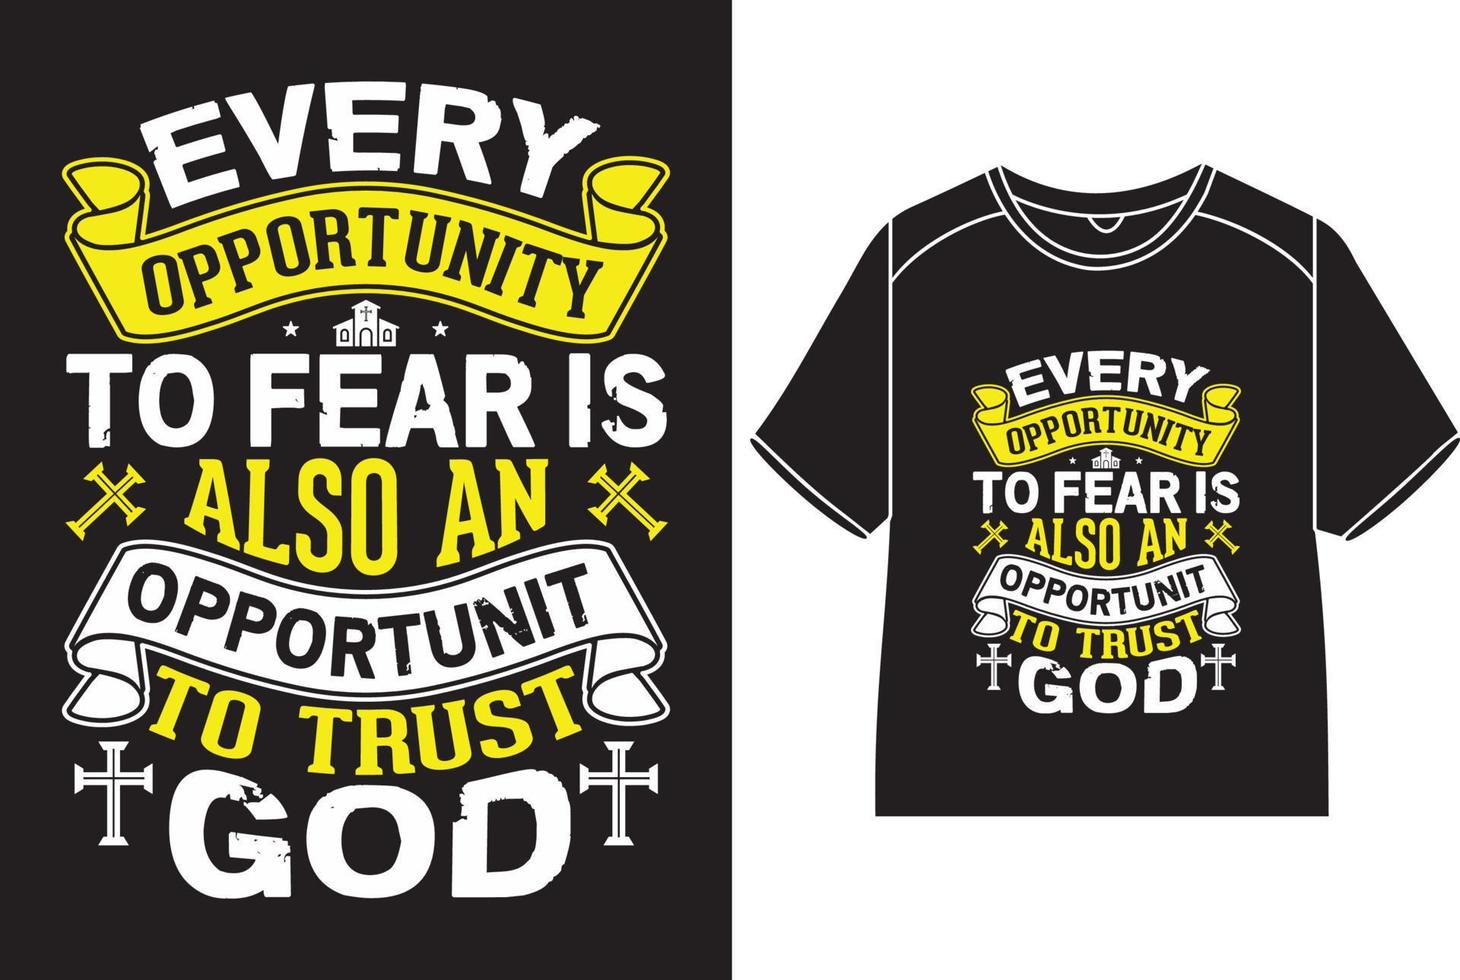 elke kans naar angst is ook een kans naar vertrouwen god t-shirt ontwerp vector